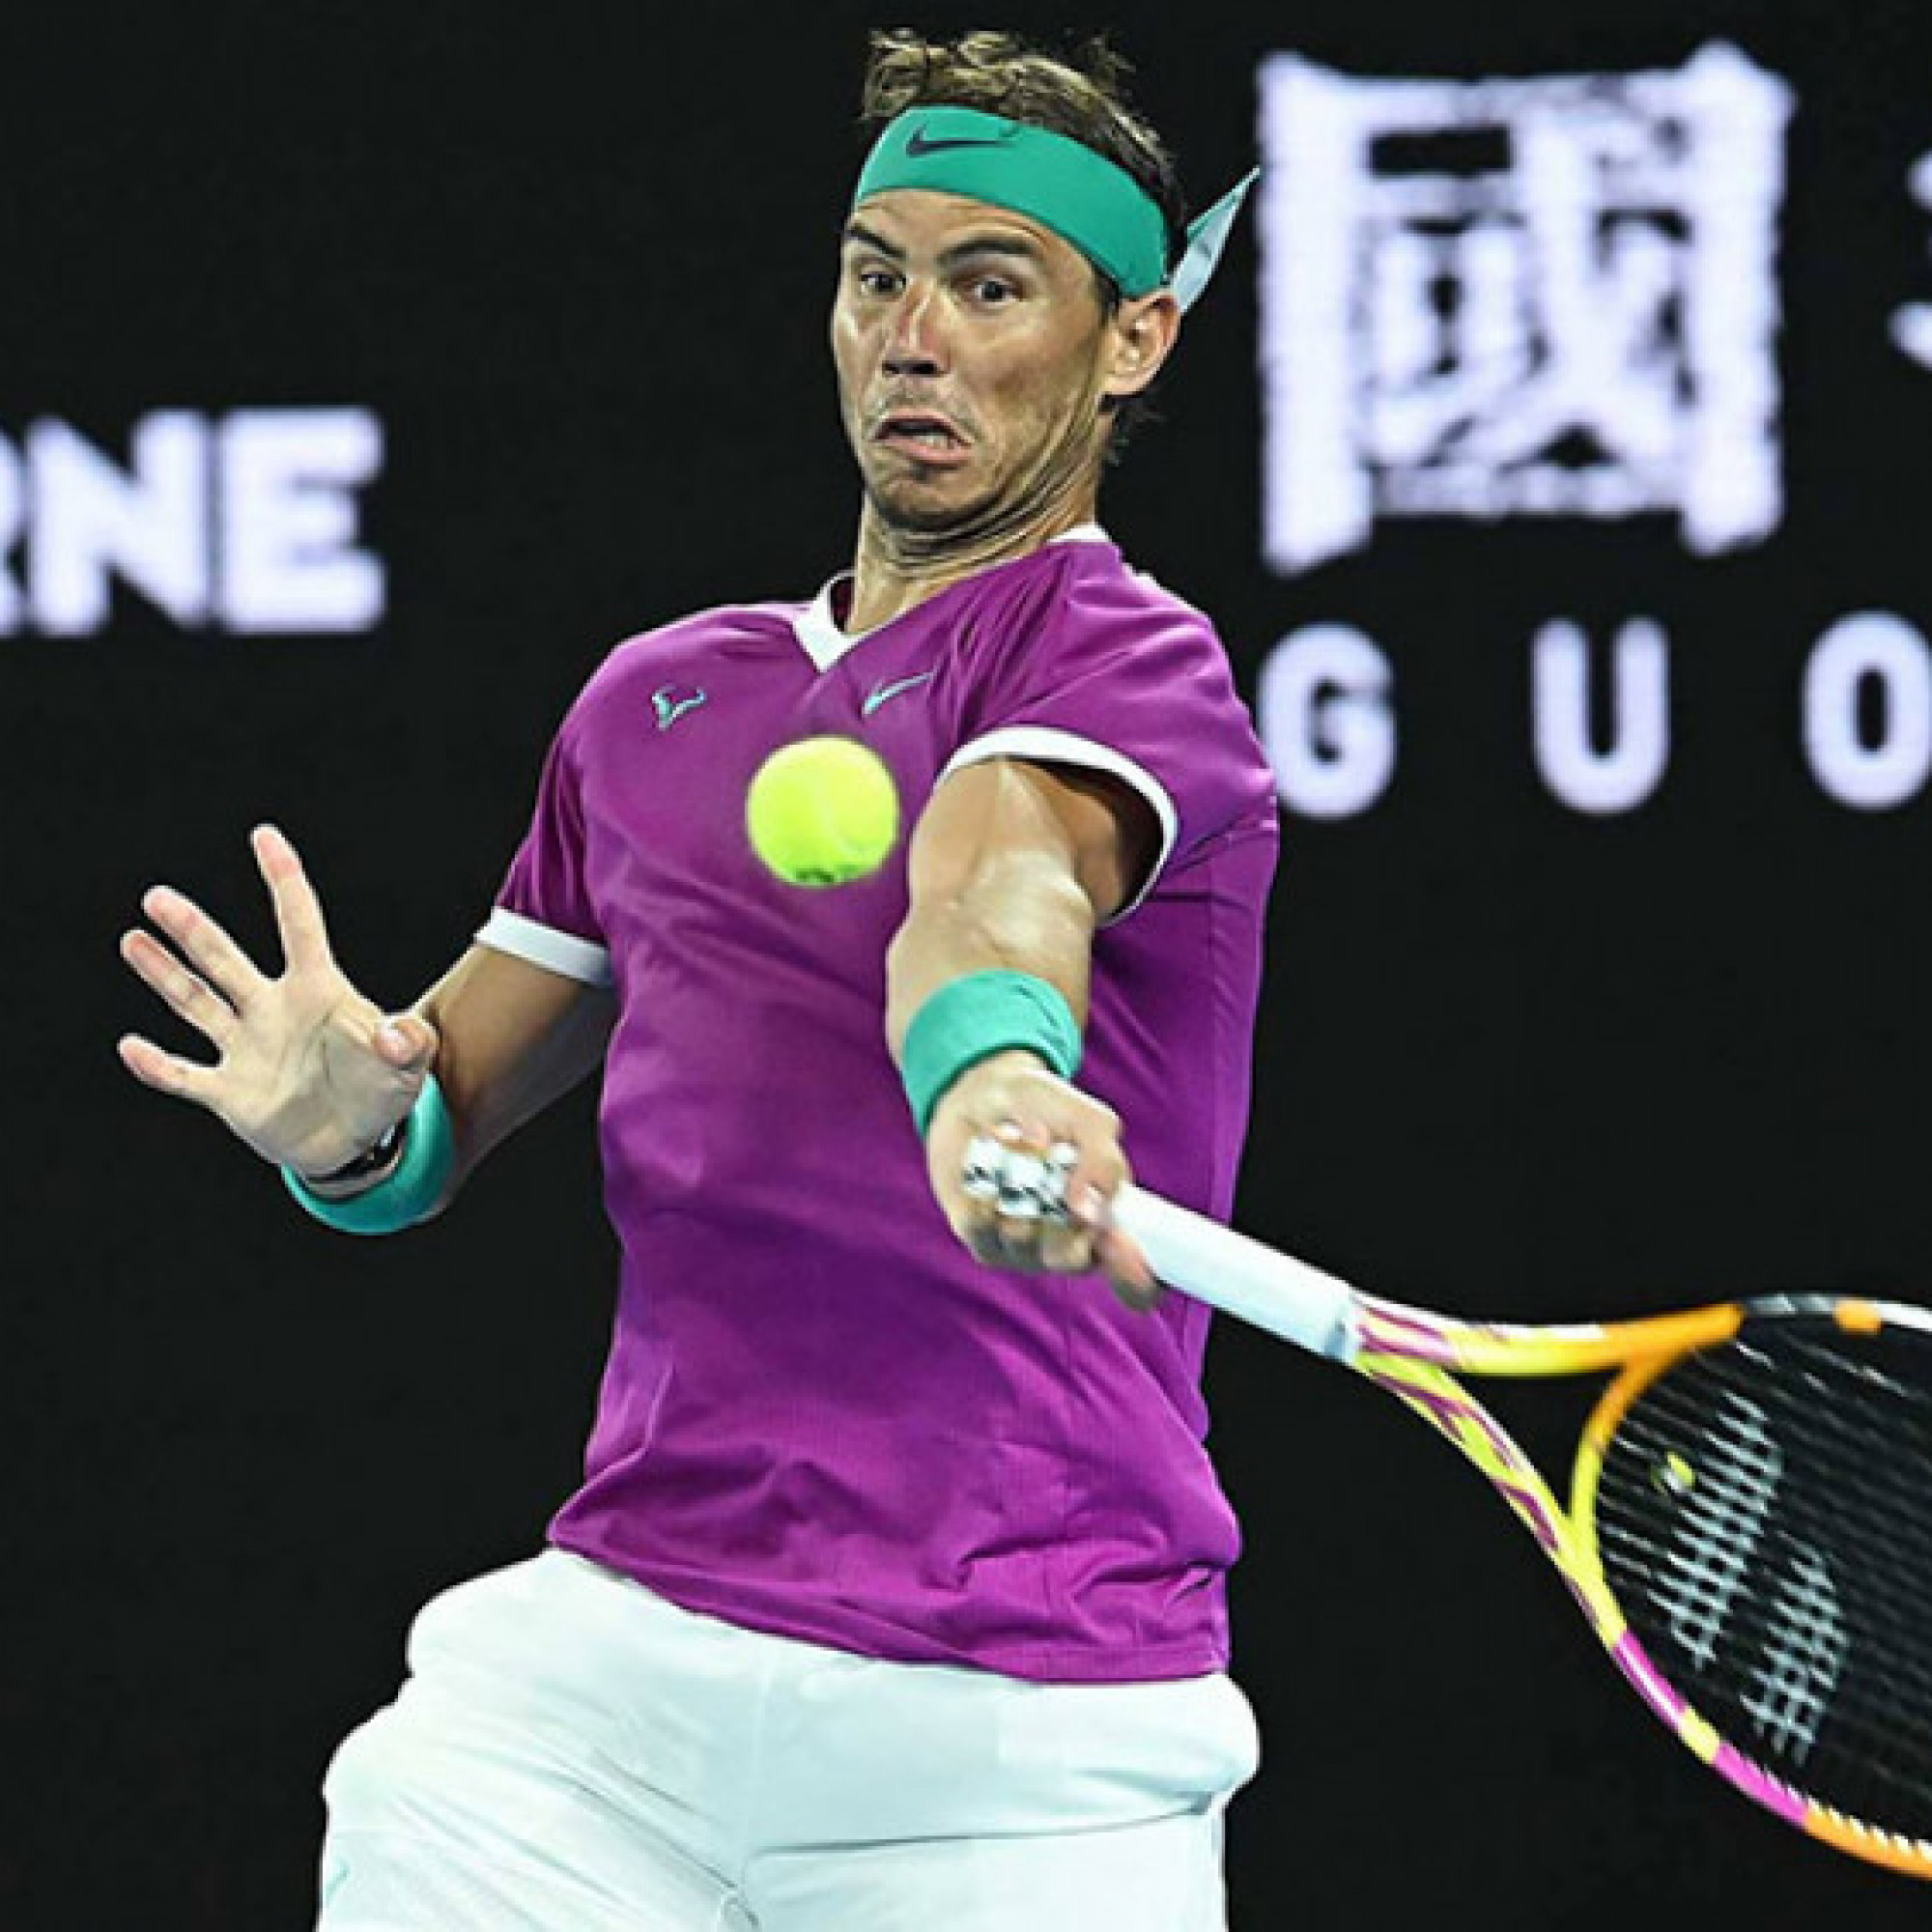  - Trực tiếp tennis Shapovalov - Nadal: "Vua đất nện" giành break (Tứ kết Australian Open)